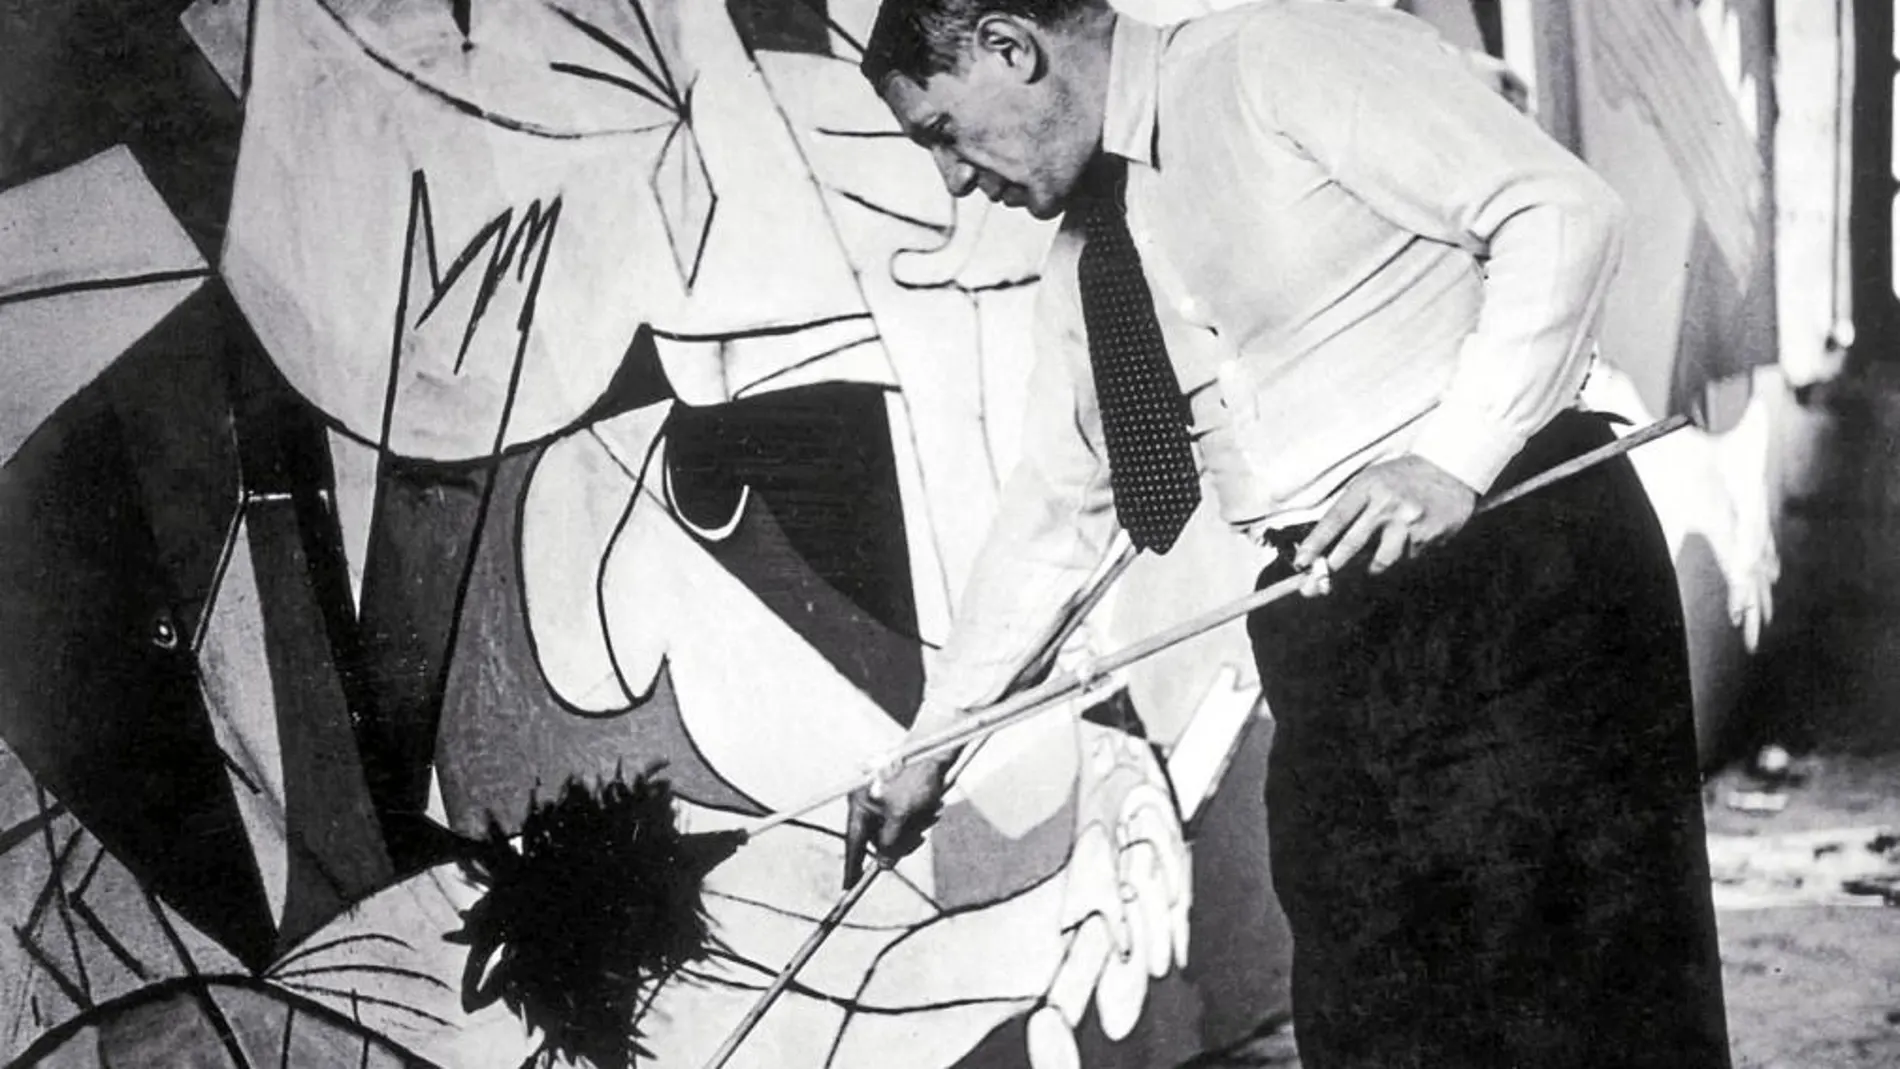 Pablo Picasso, retratado por la artista Dora Maar, en un momento de la realización de su impresionante 'Guernica' en su taller de París